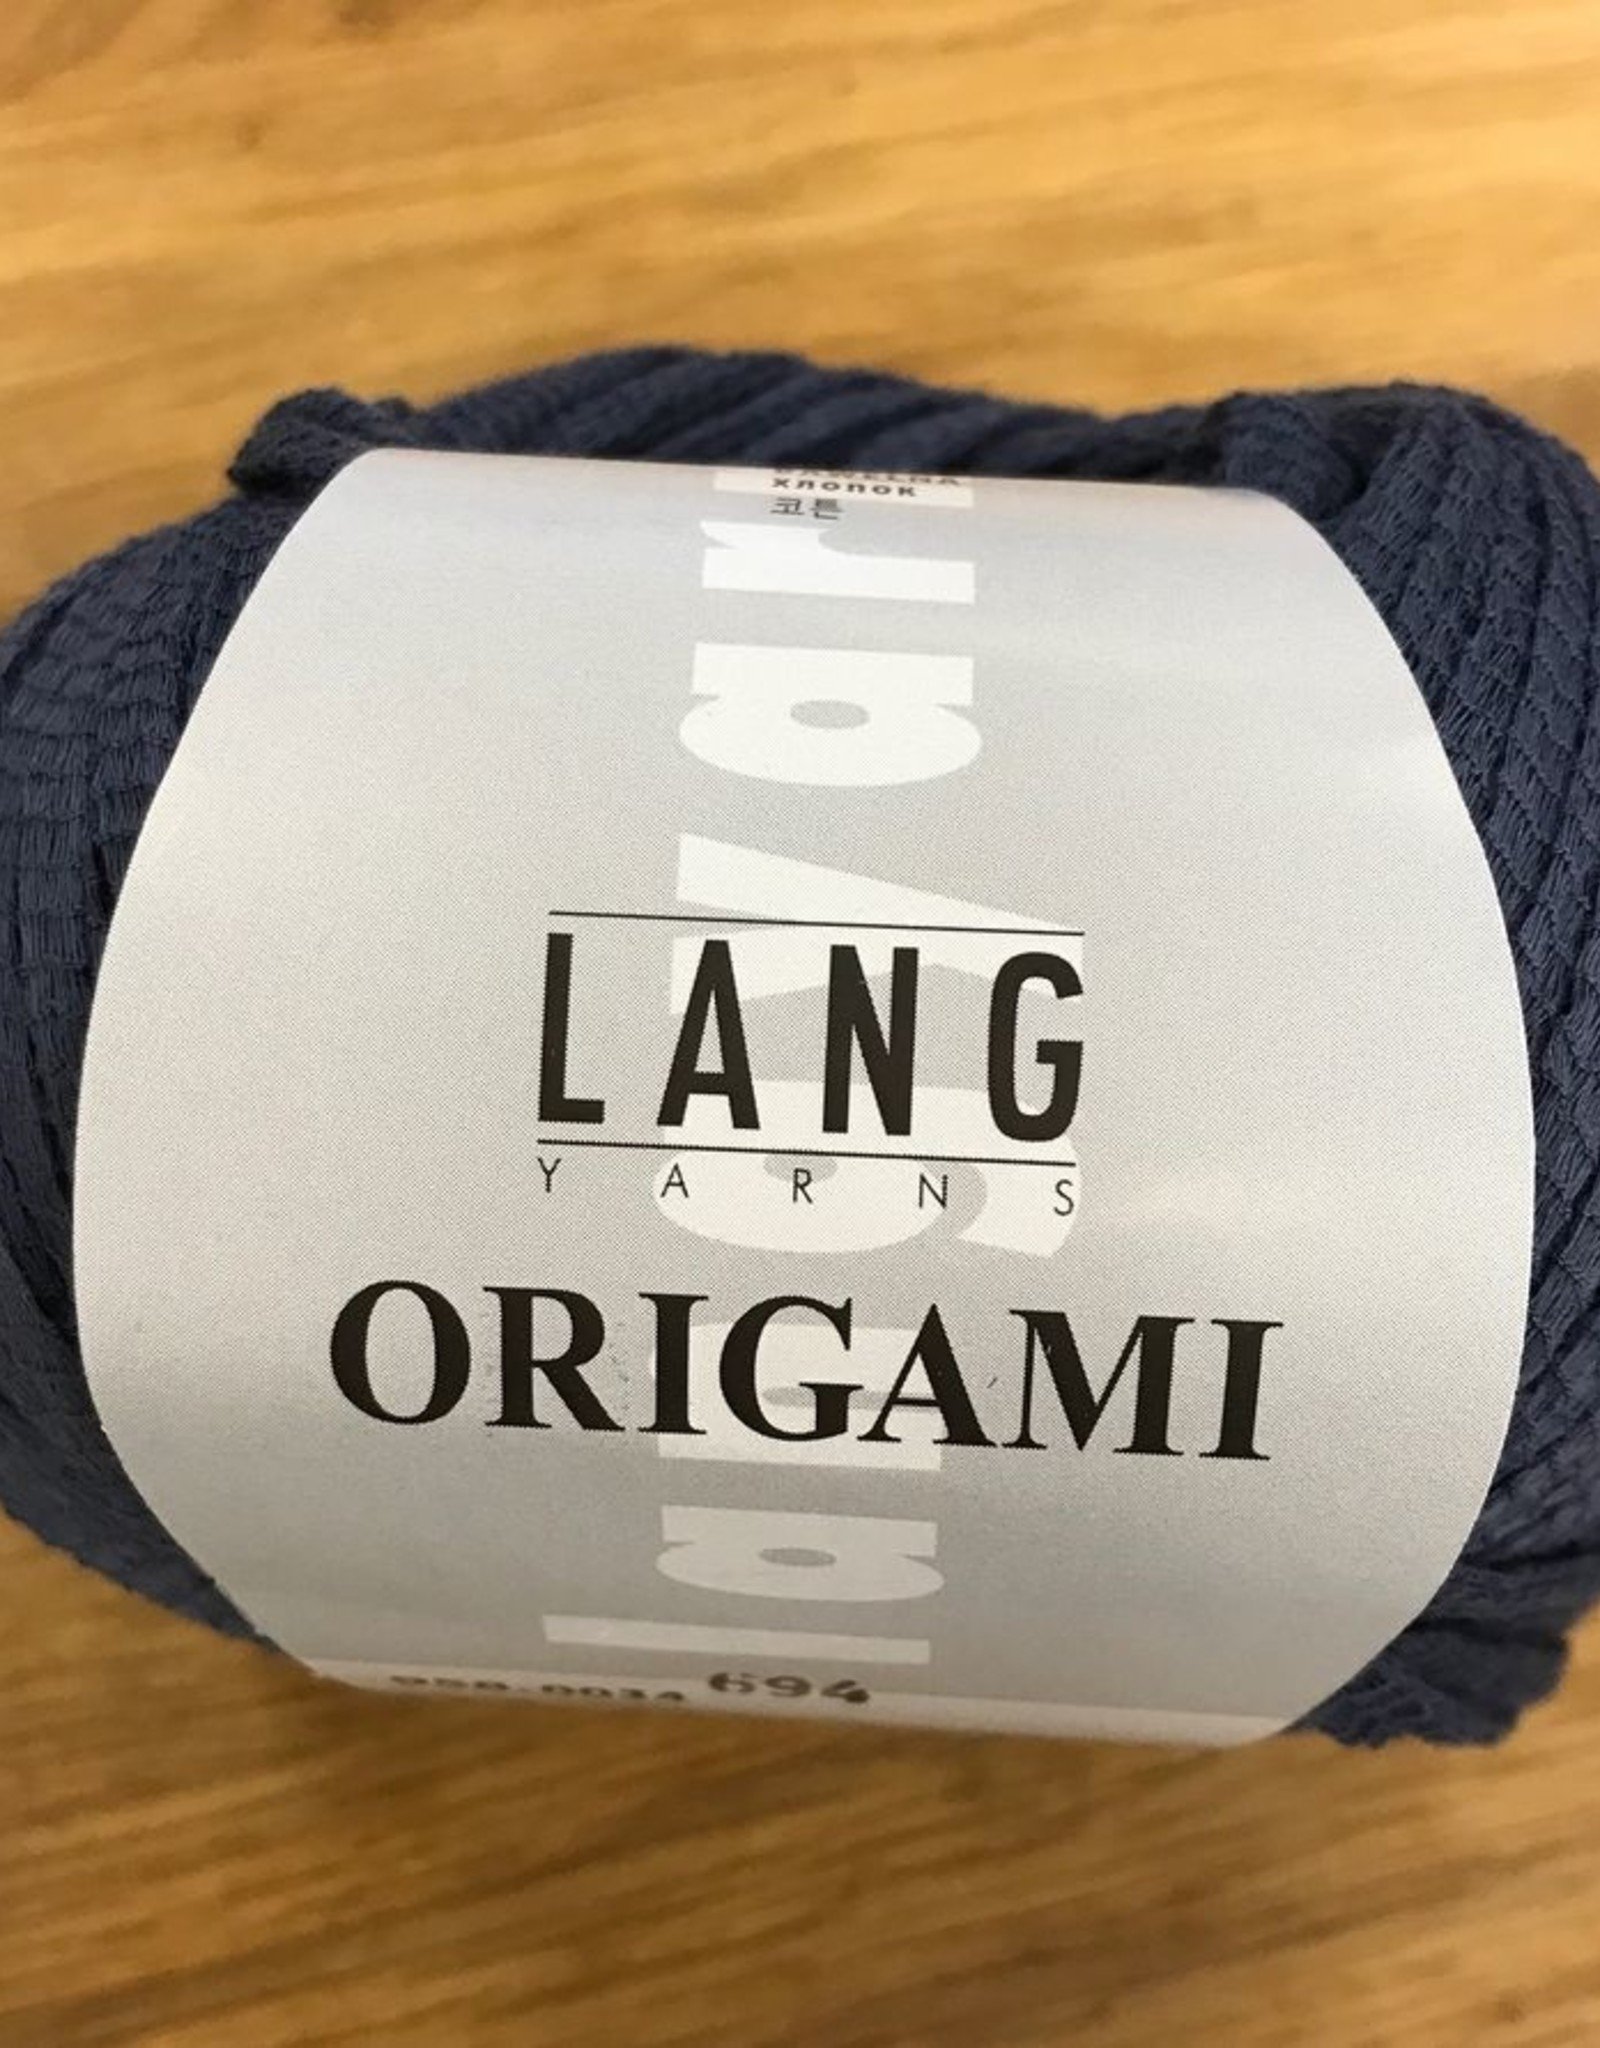 Lang Yarns Origami by Lang Yarns - Discontinued